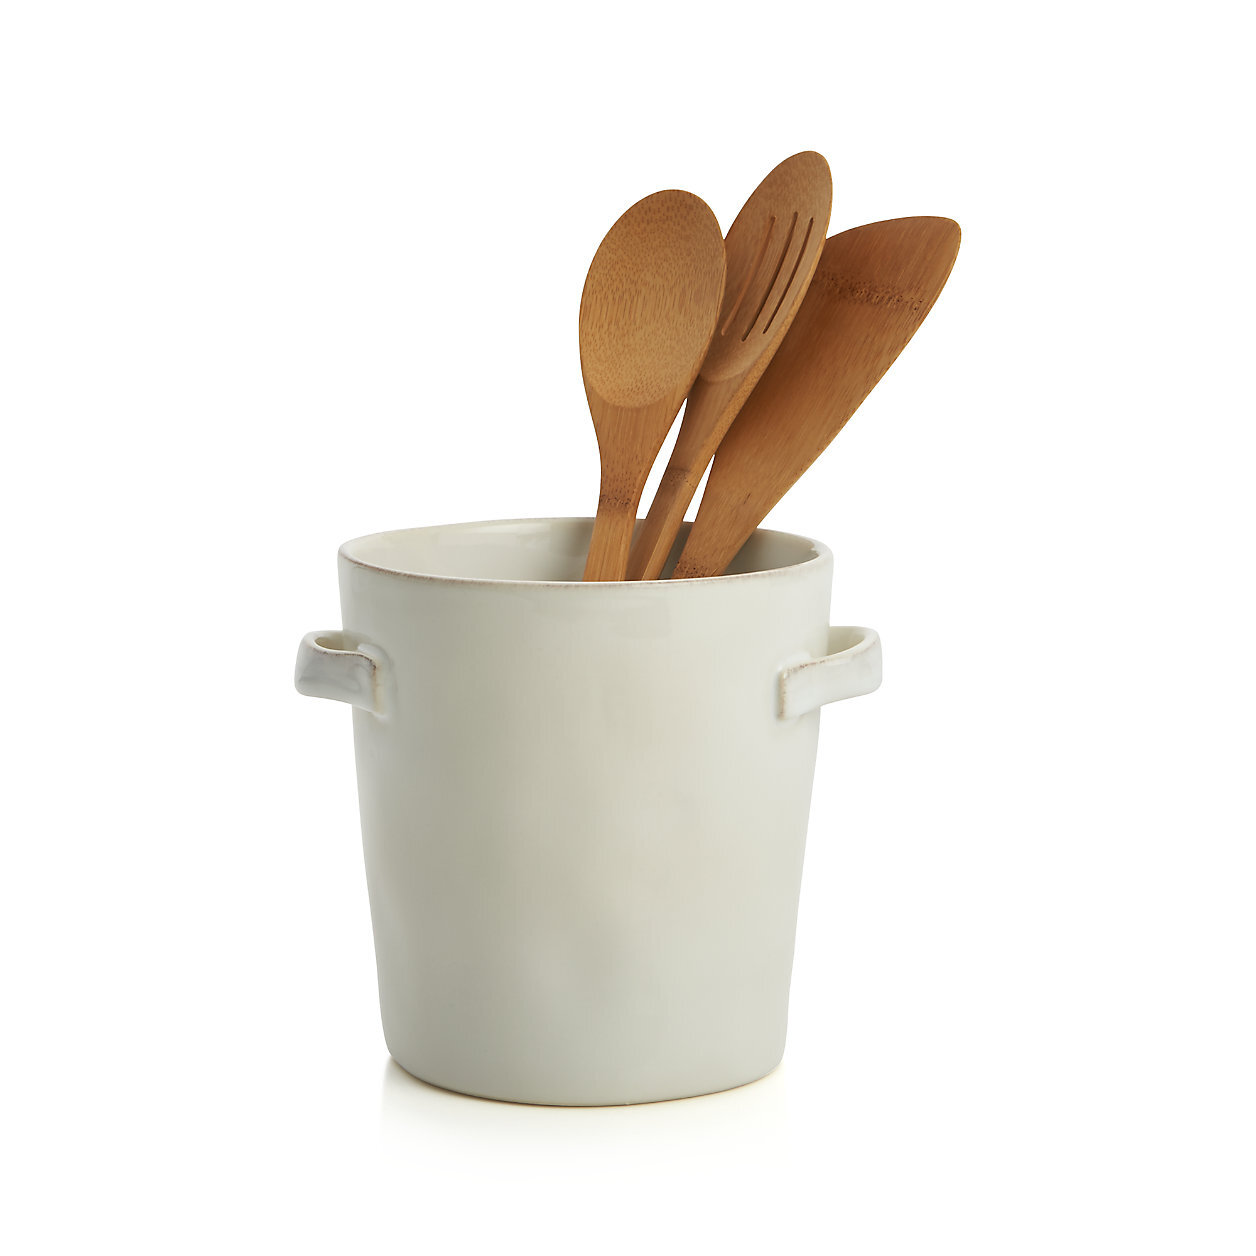 marin-white-utensil-holder-with-handles.jpg